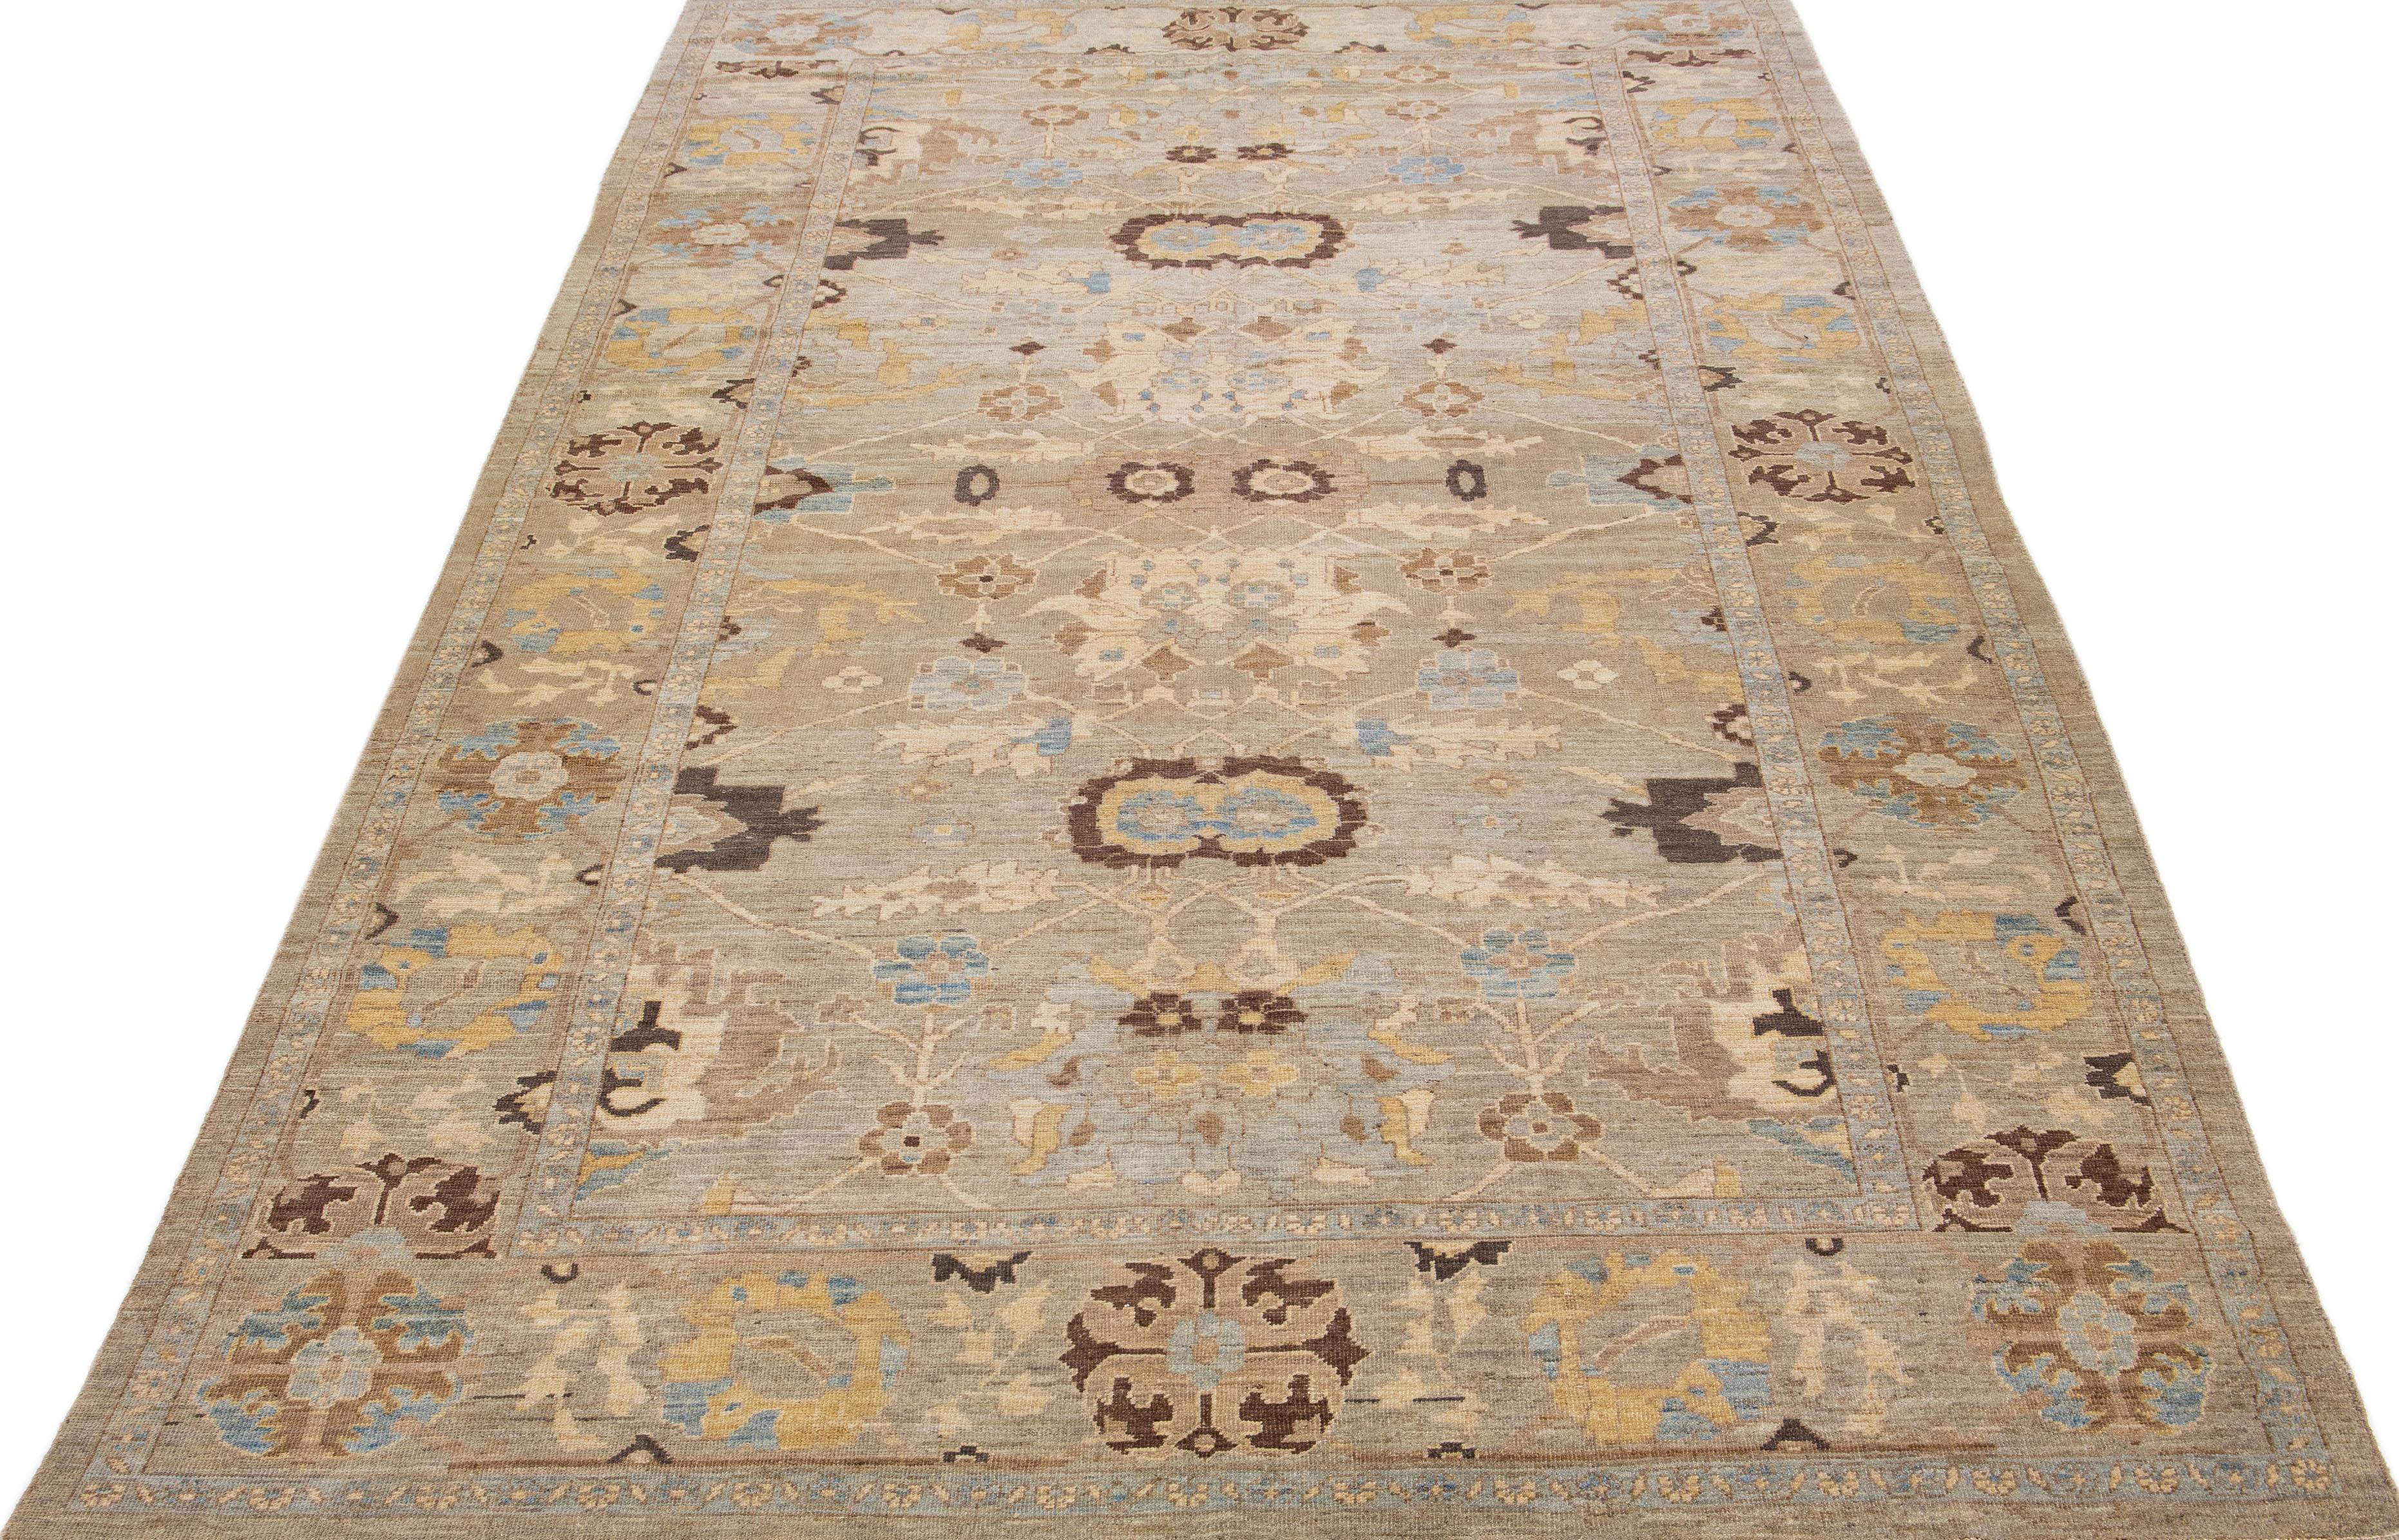 Magnifique tapis persan moderne Sultanabad en laine nouée à la main avec un champ de couleur marron. Ce tapis Sultanabad présente des accents de beige et de bleu dans un motif floral intégral.

Ce tapis mesure 8' 8